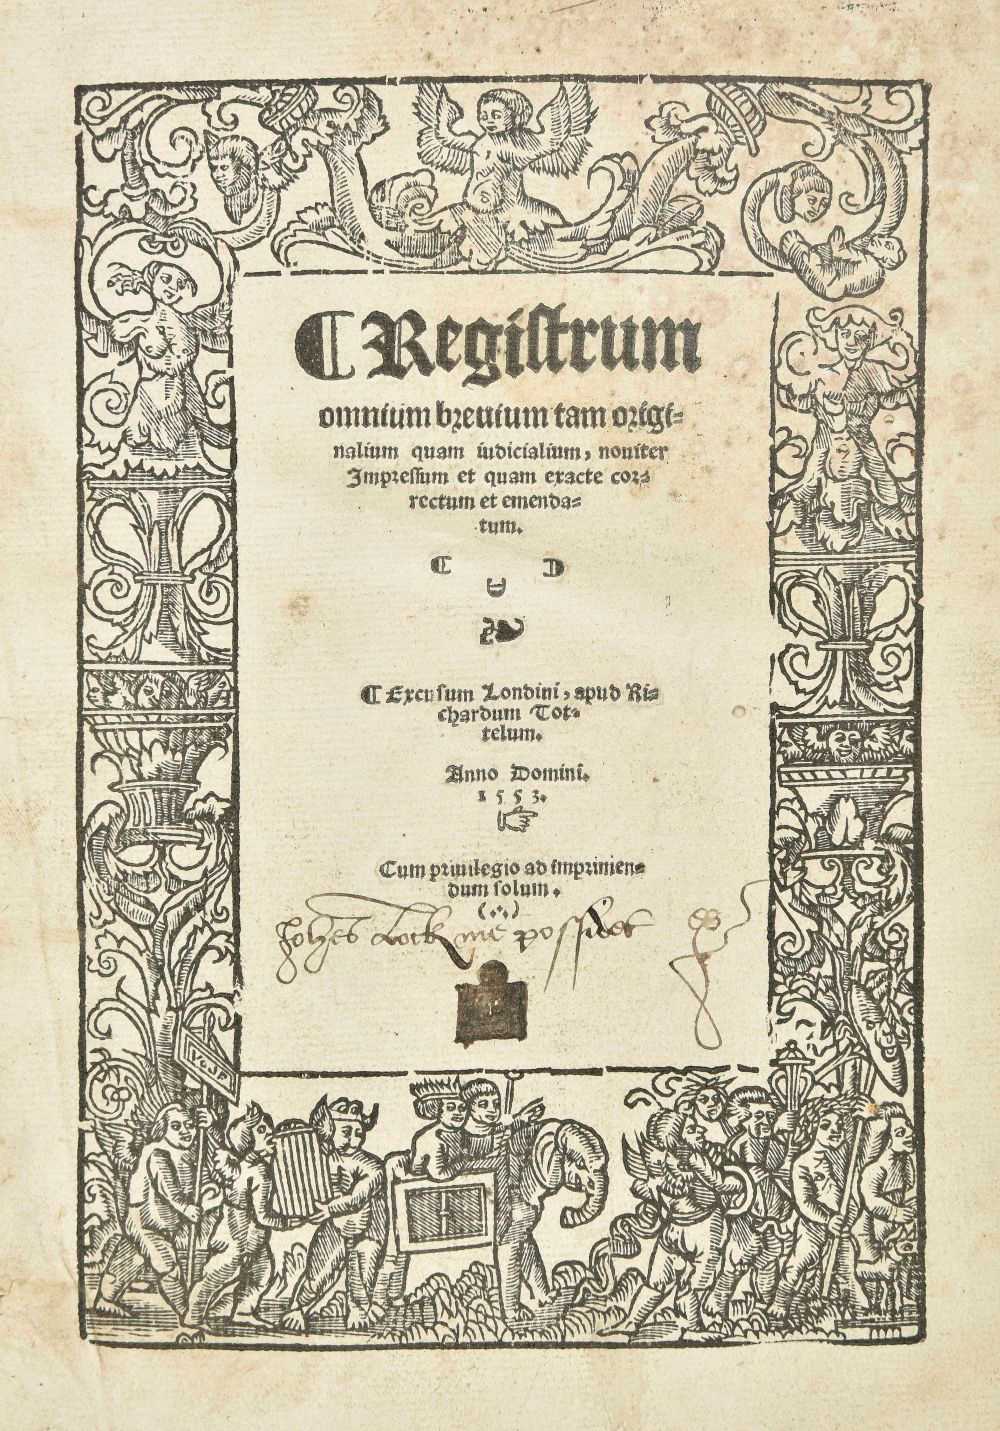 Lot 213 - Law. Registrum omnium brevium, London: Richard Tottel, 1553